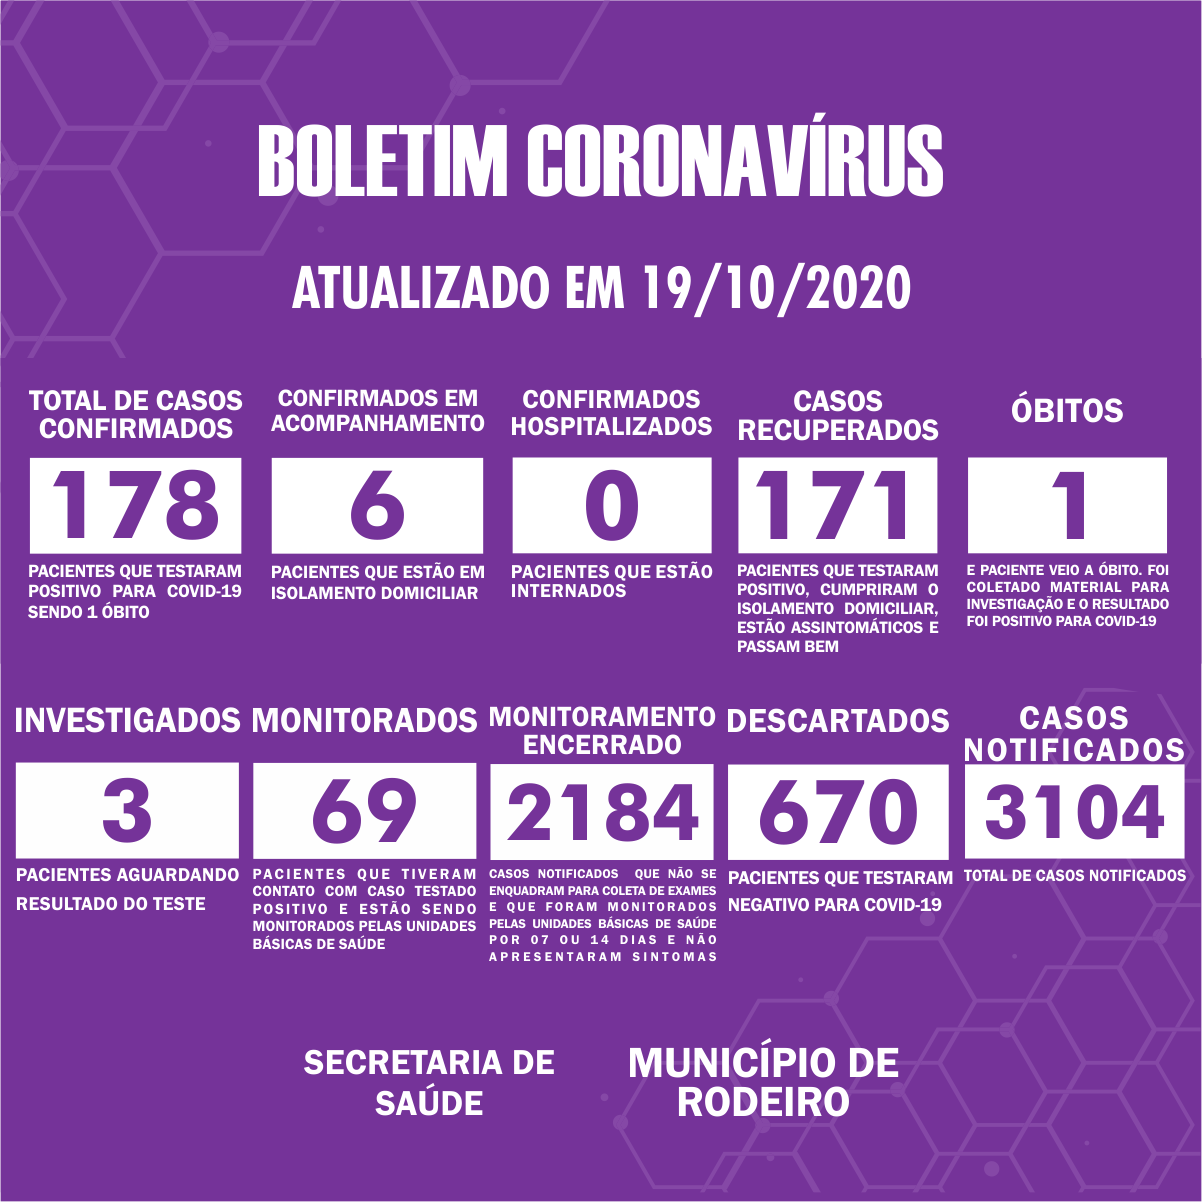 Boletim Epidemiológico do Município de Rodeiro sobre coronavírus, atualizado em 19/10/2020